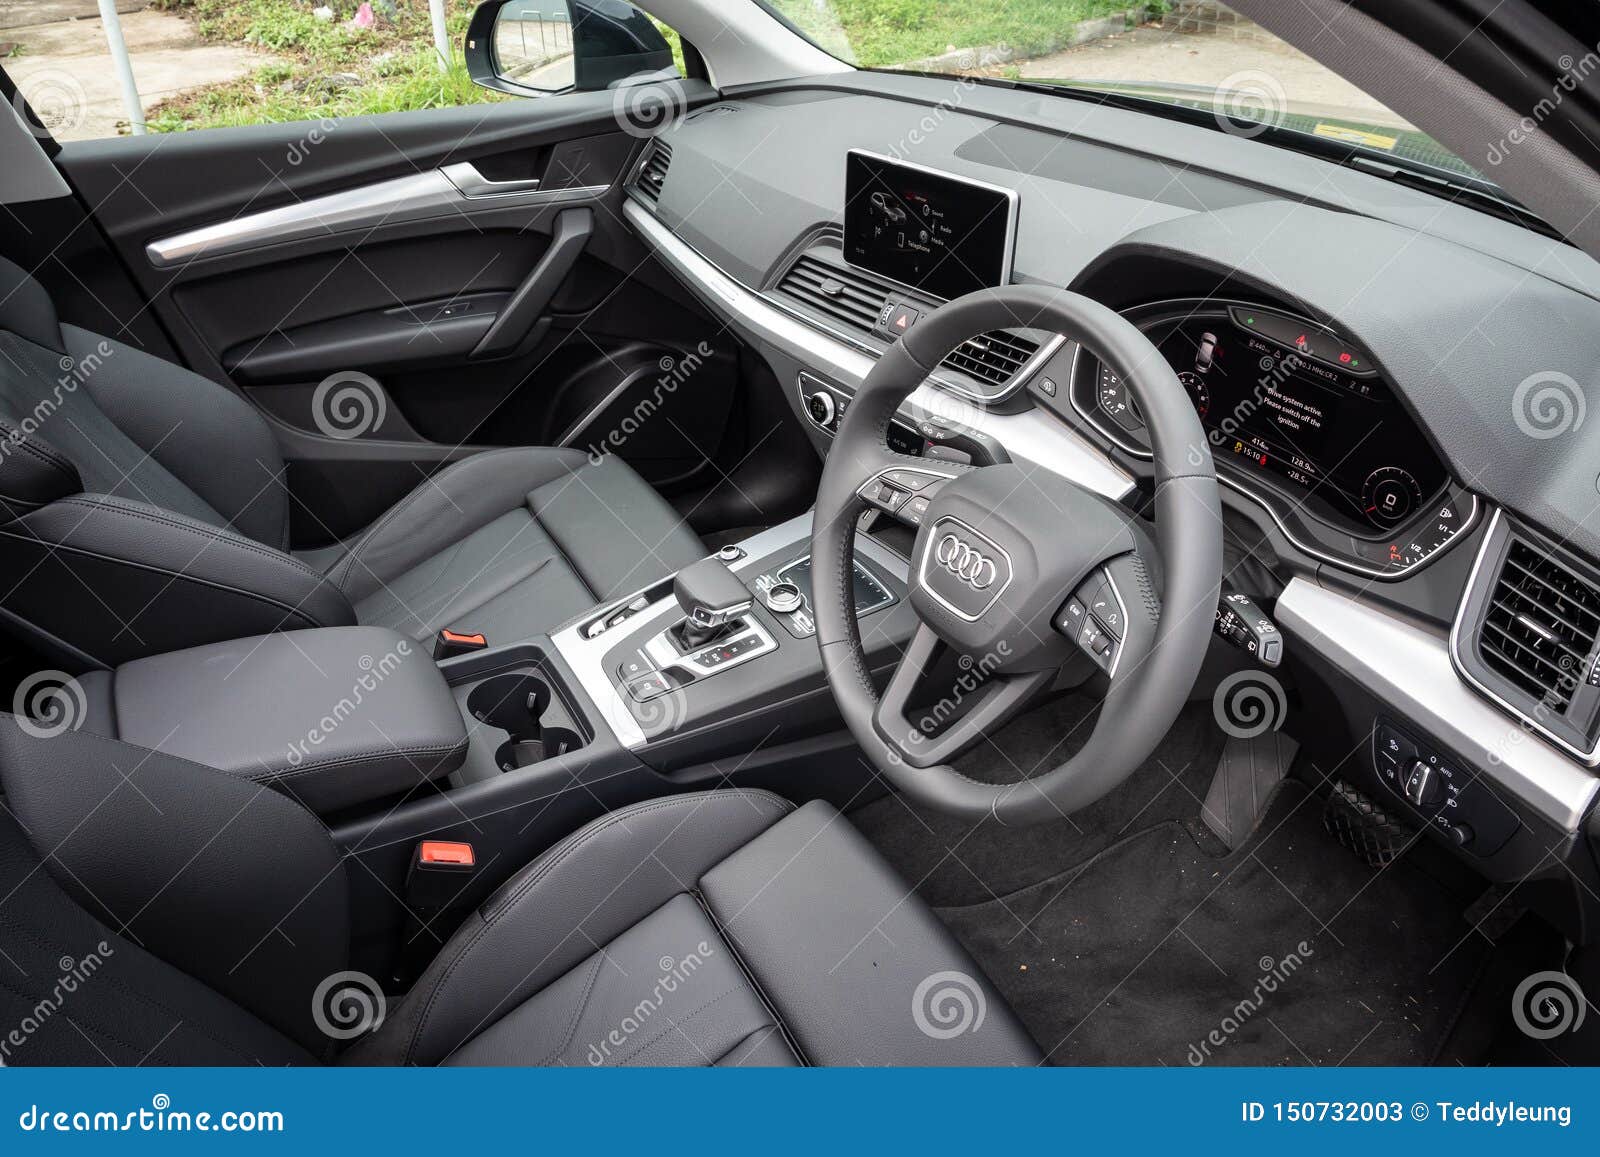 PICS: 2013 Audi Q5